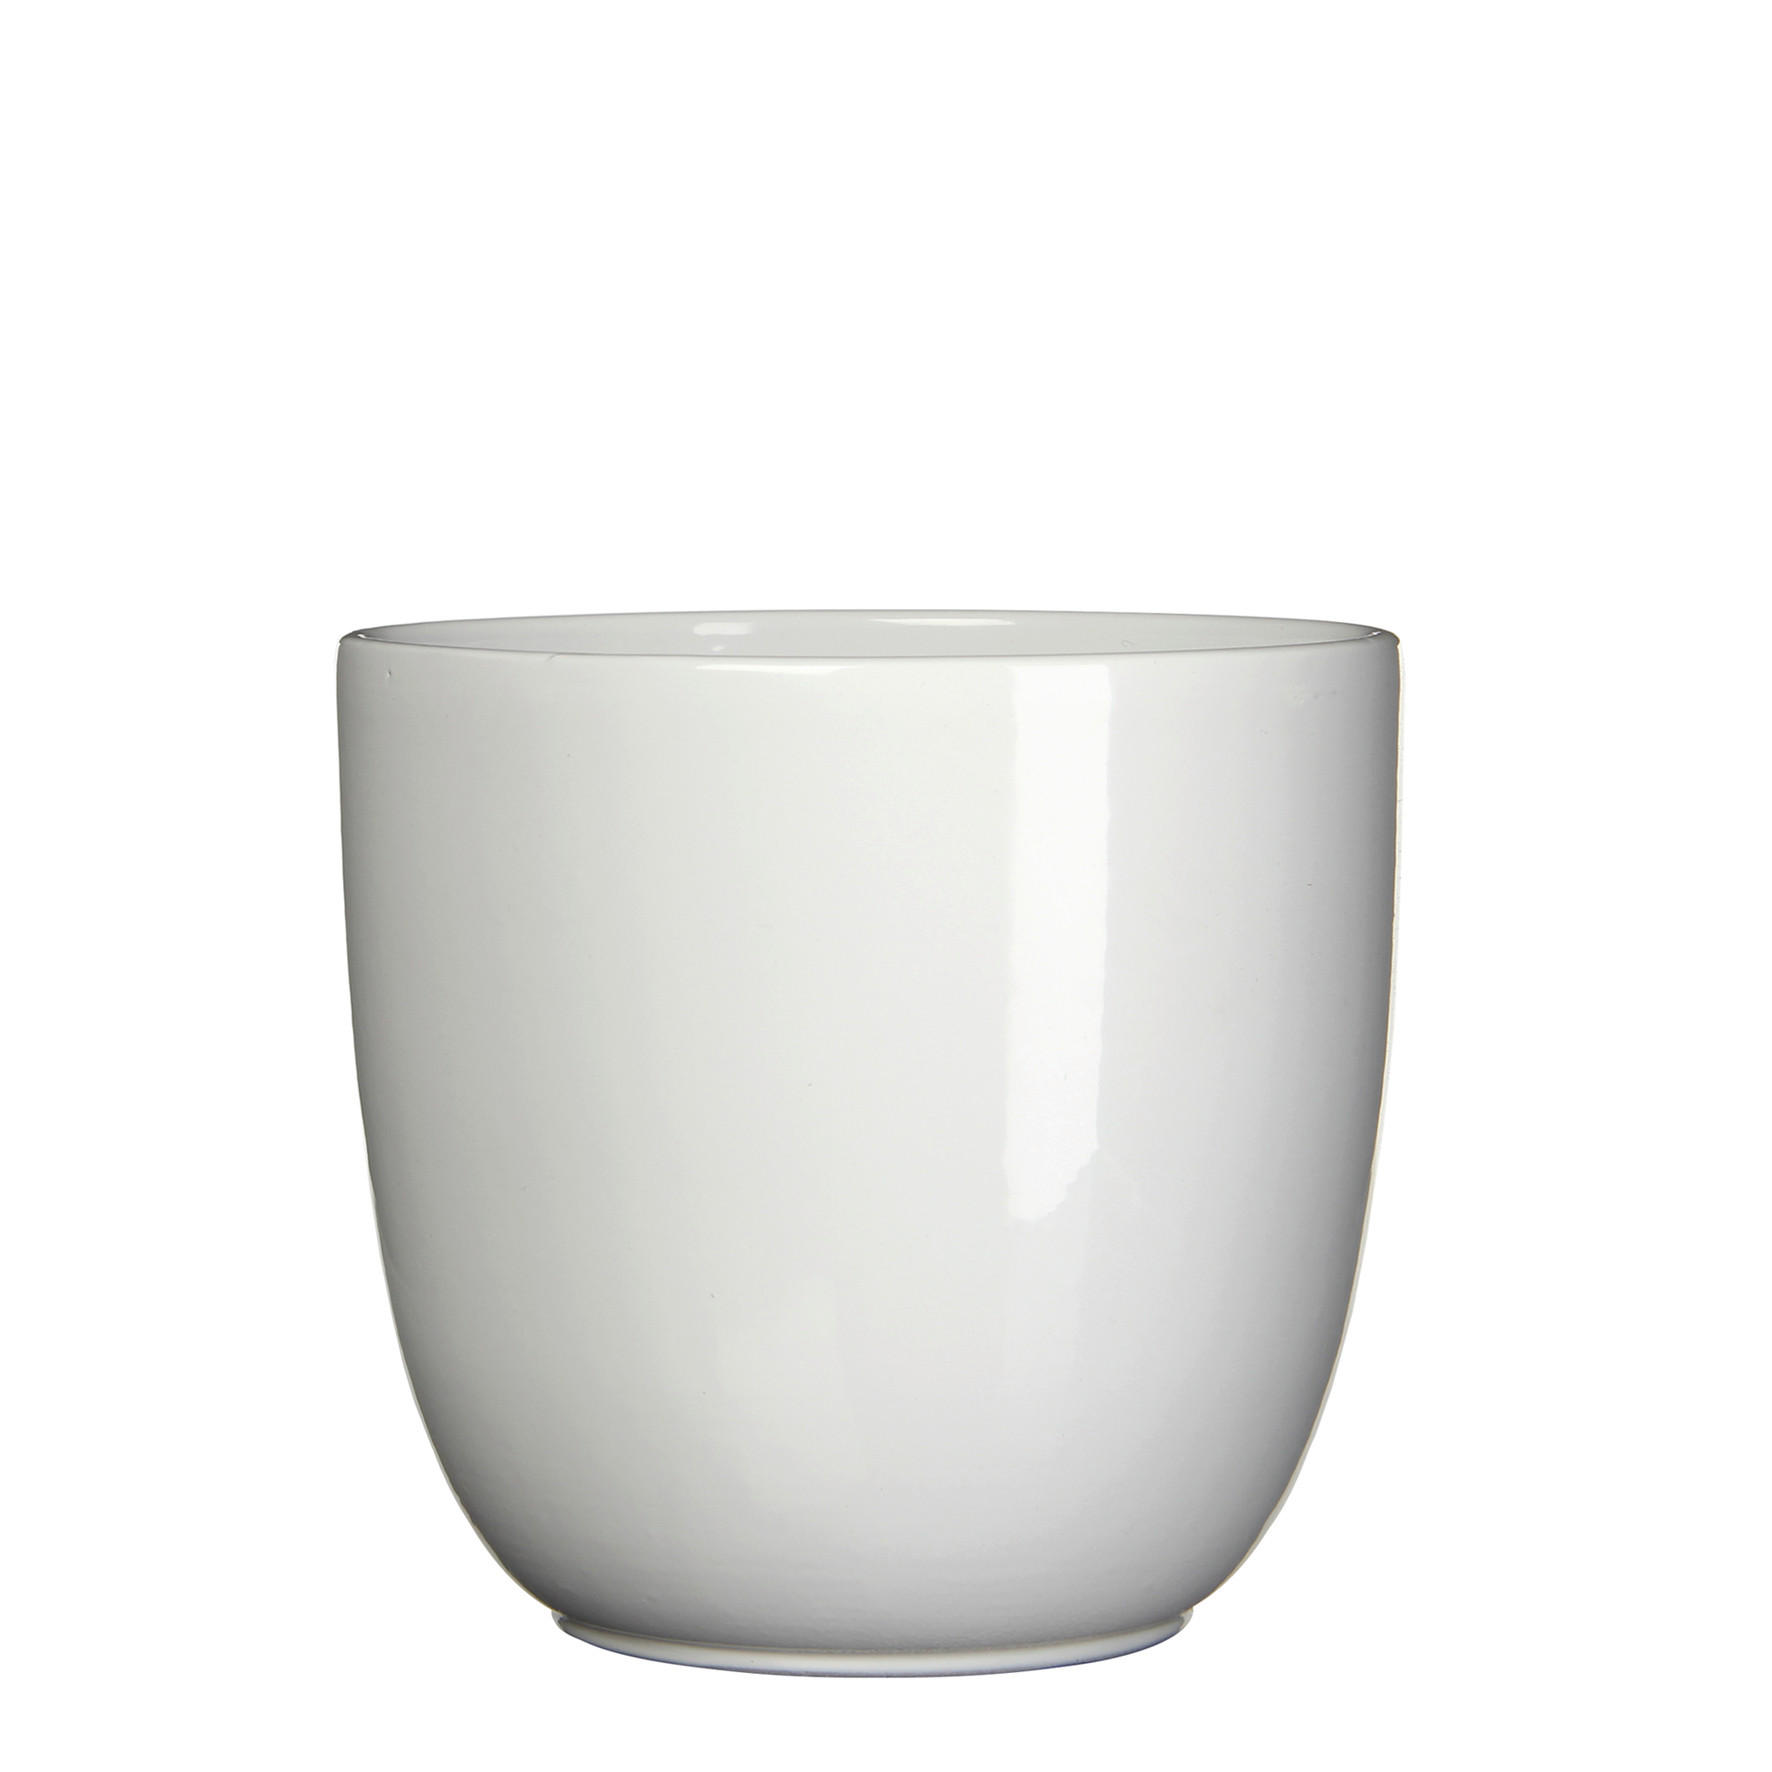 TEGLA ZA BILJKE  keramika  - bijela, Basics, keramika (25/23cm)